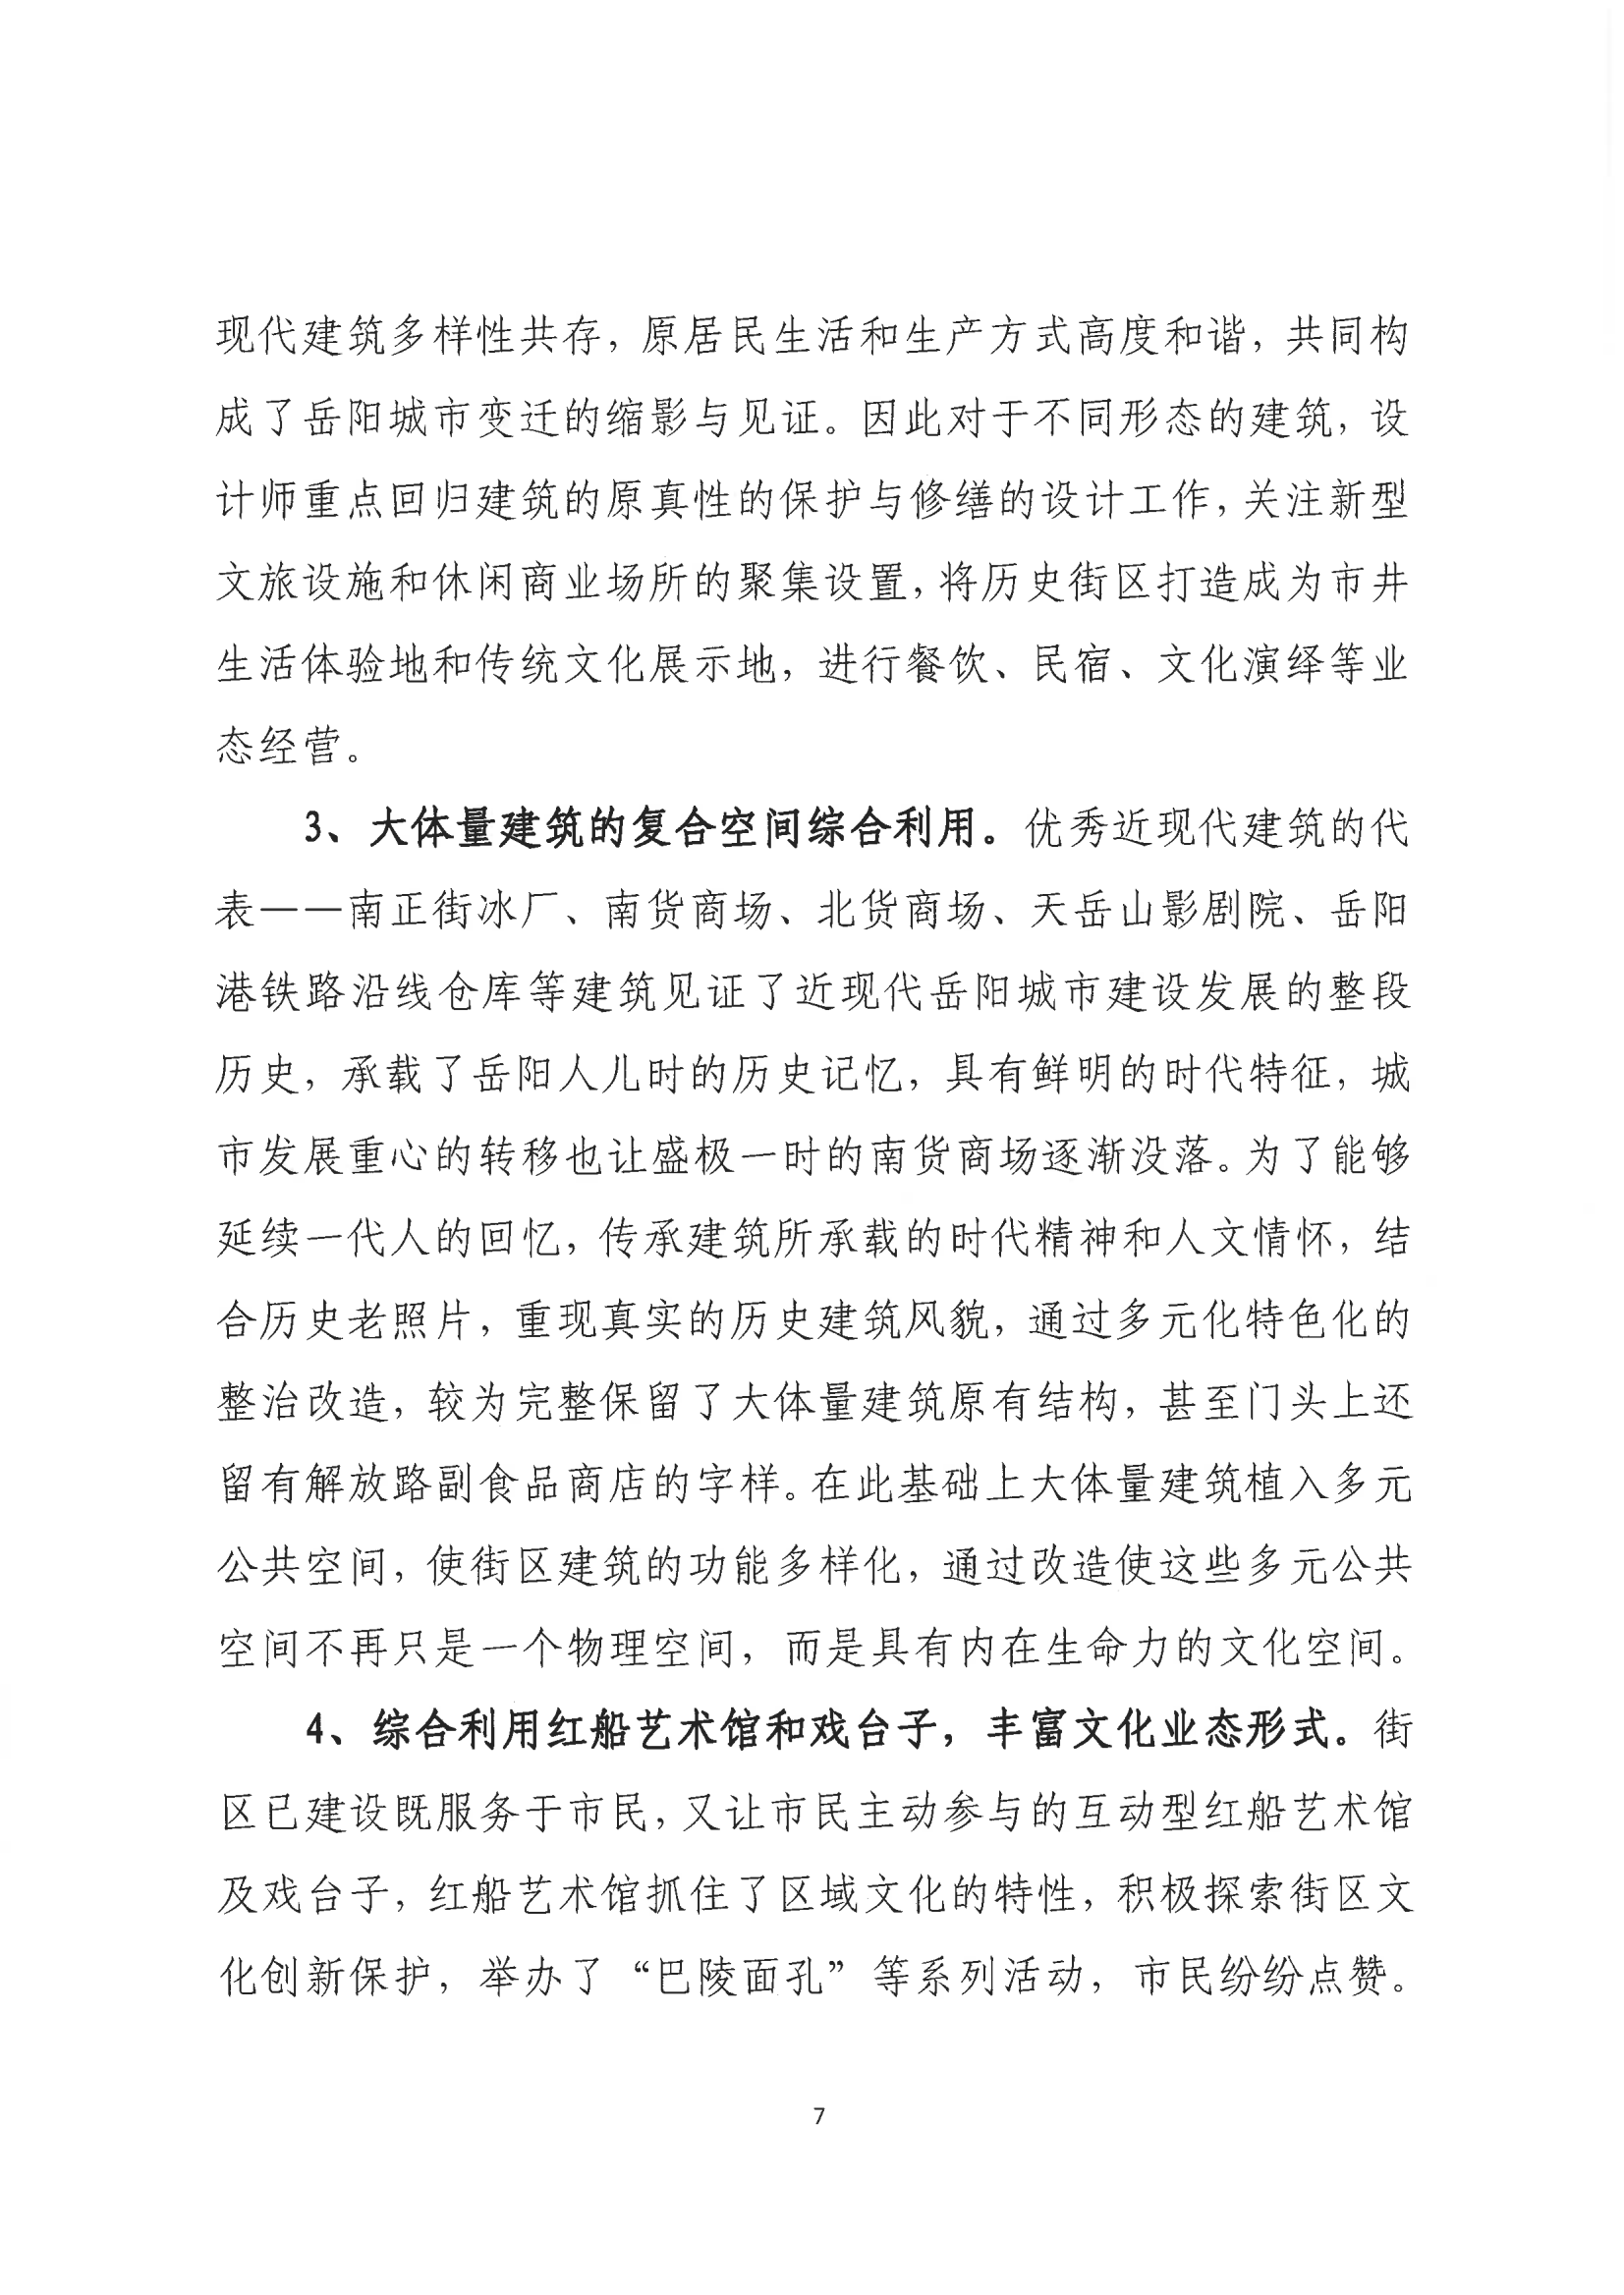 001号提案关于岳阳市政协九届一次会议第001号提案的回复(1)_06.png